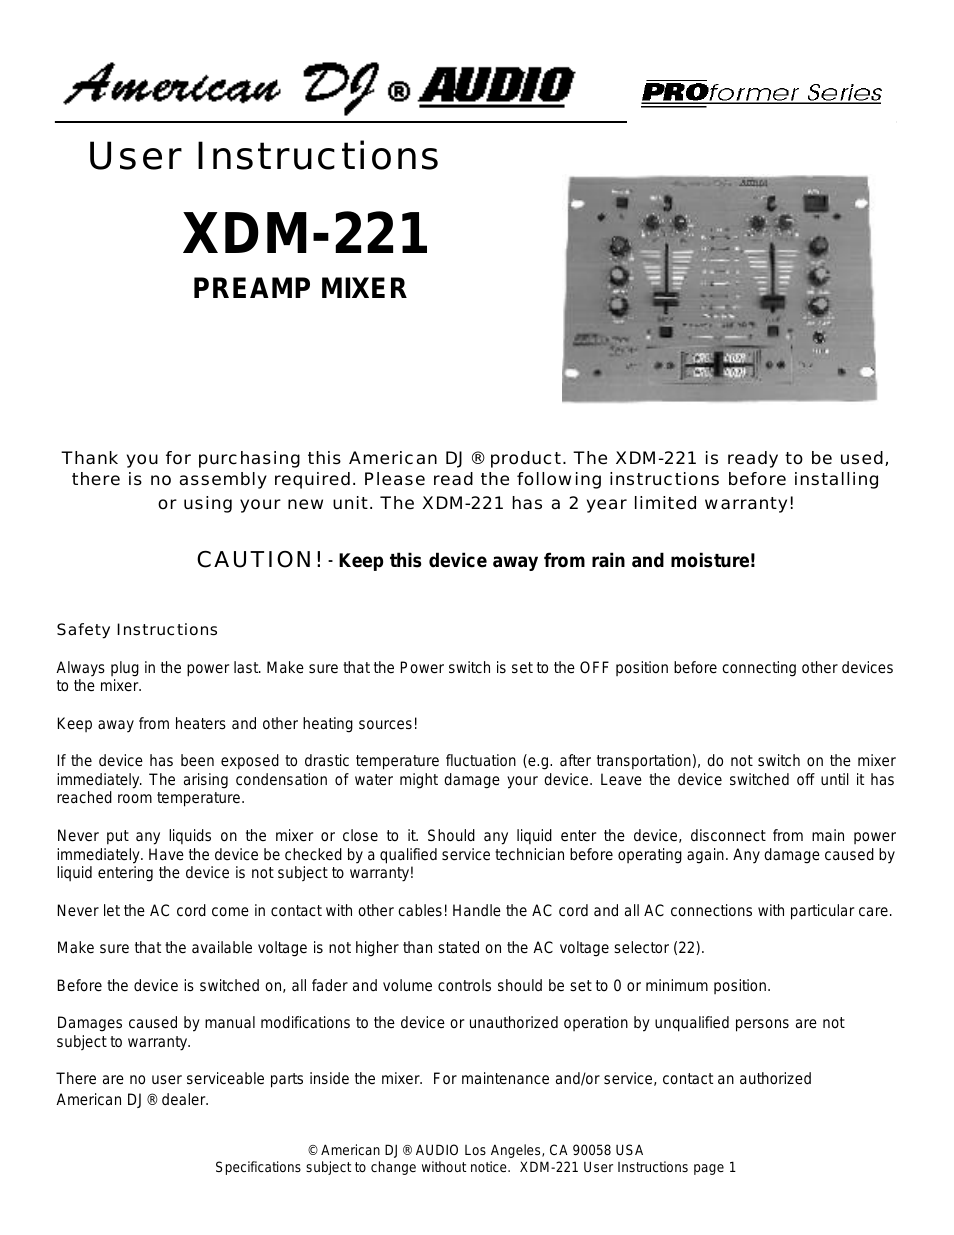 XDM-221